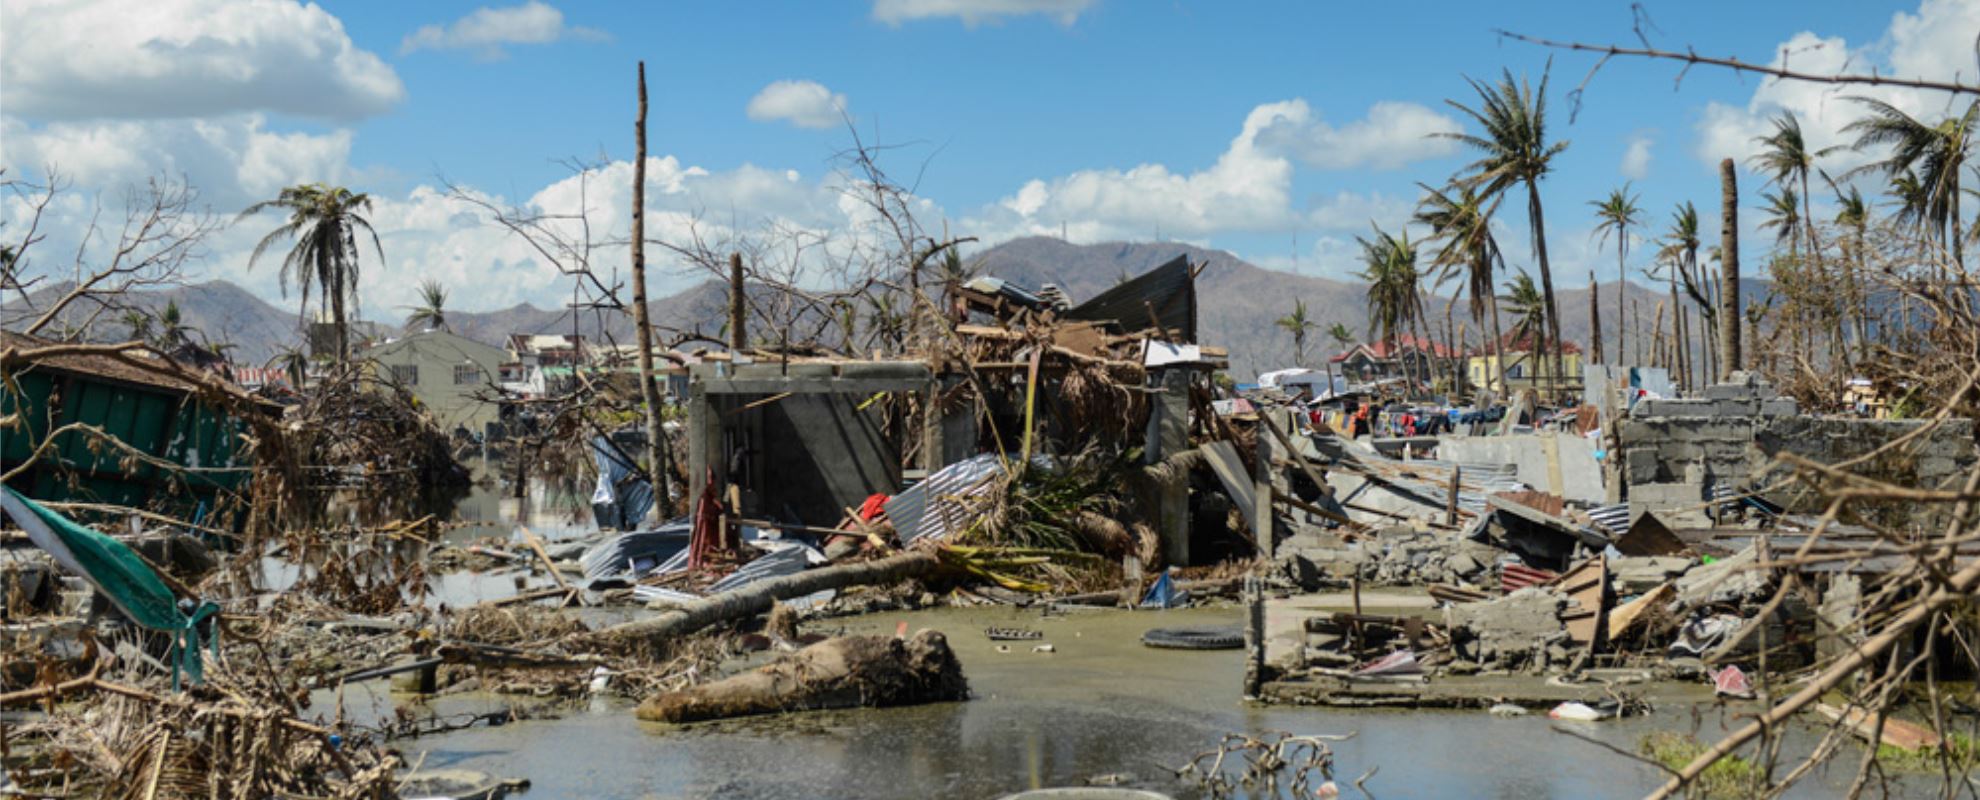 Det var enorme ødeleggelser etter tyfonen Yolanda, som rammet Filippinene i 2013. Foto: Sebastian Posingis
